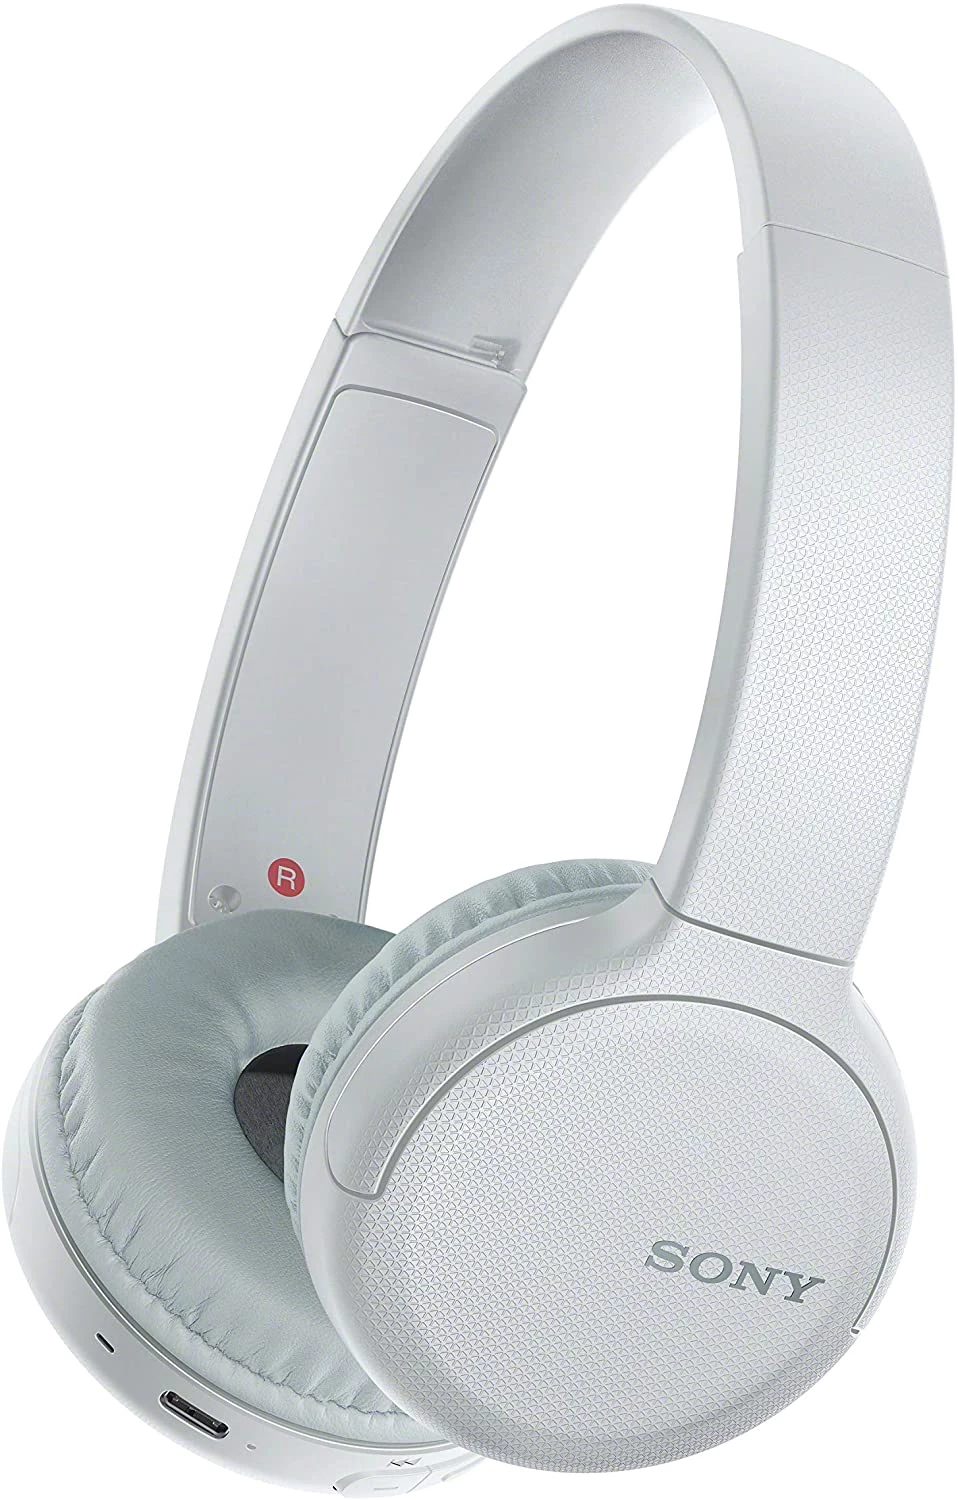 Sony WH-CH510 頭戴式無線藍芽耳機 (白色) #wH-CH510/wz